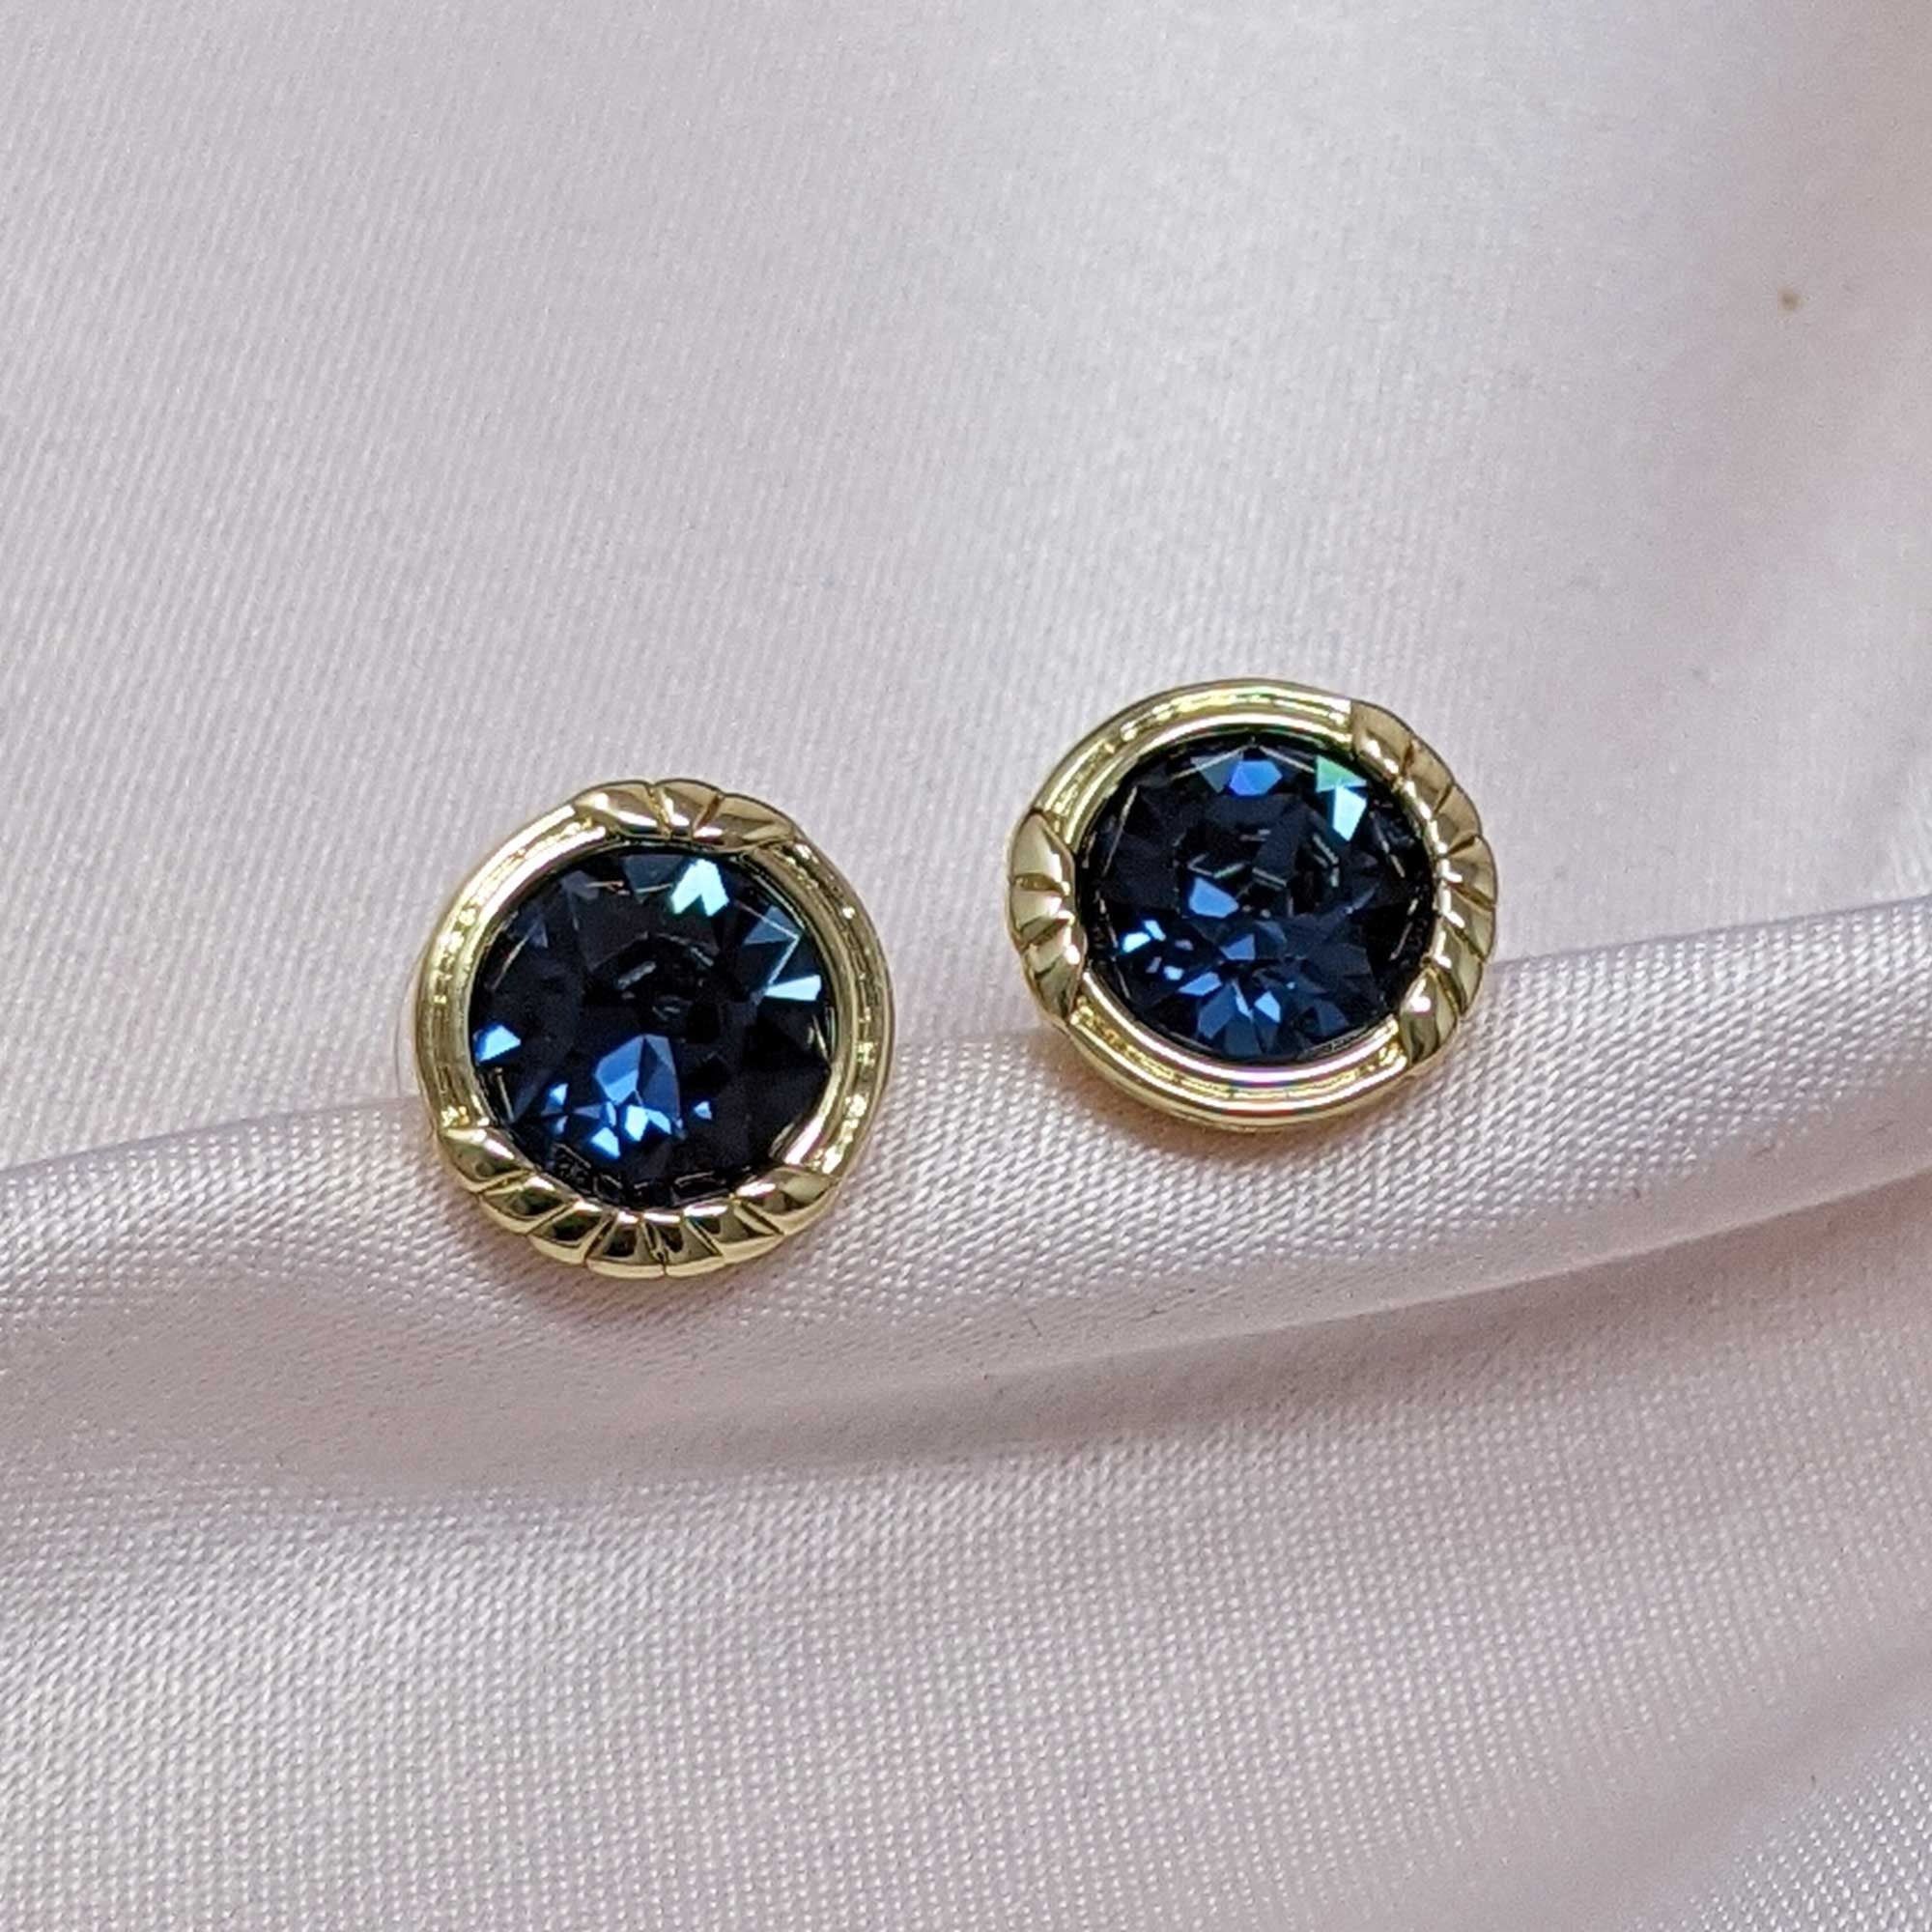 Lovett Heirloom Earrings - Cordelia Swarovski ® Crystal Stud Earrings